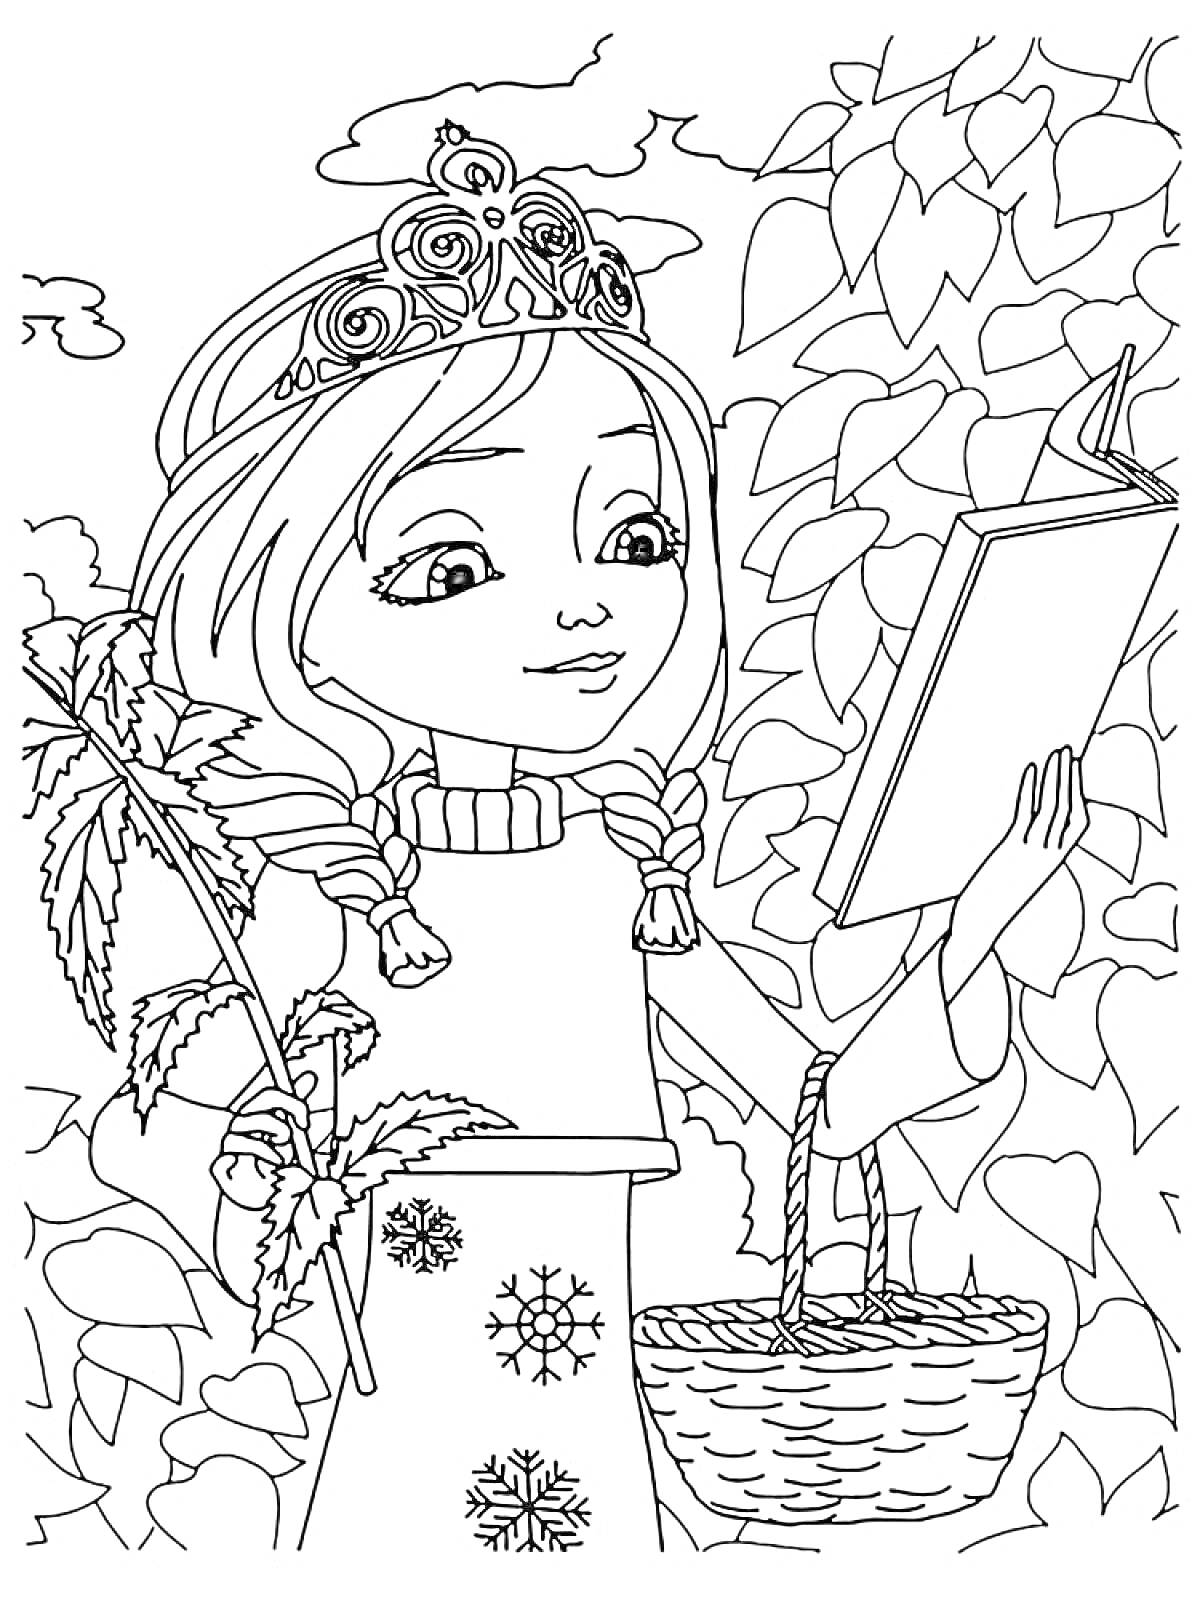 Раскраска Девочка с растением и книгой, украшенная корона, корзинка и листья на заднем плане